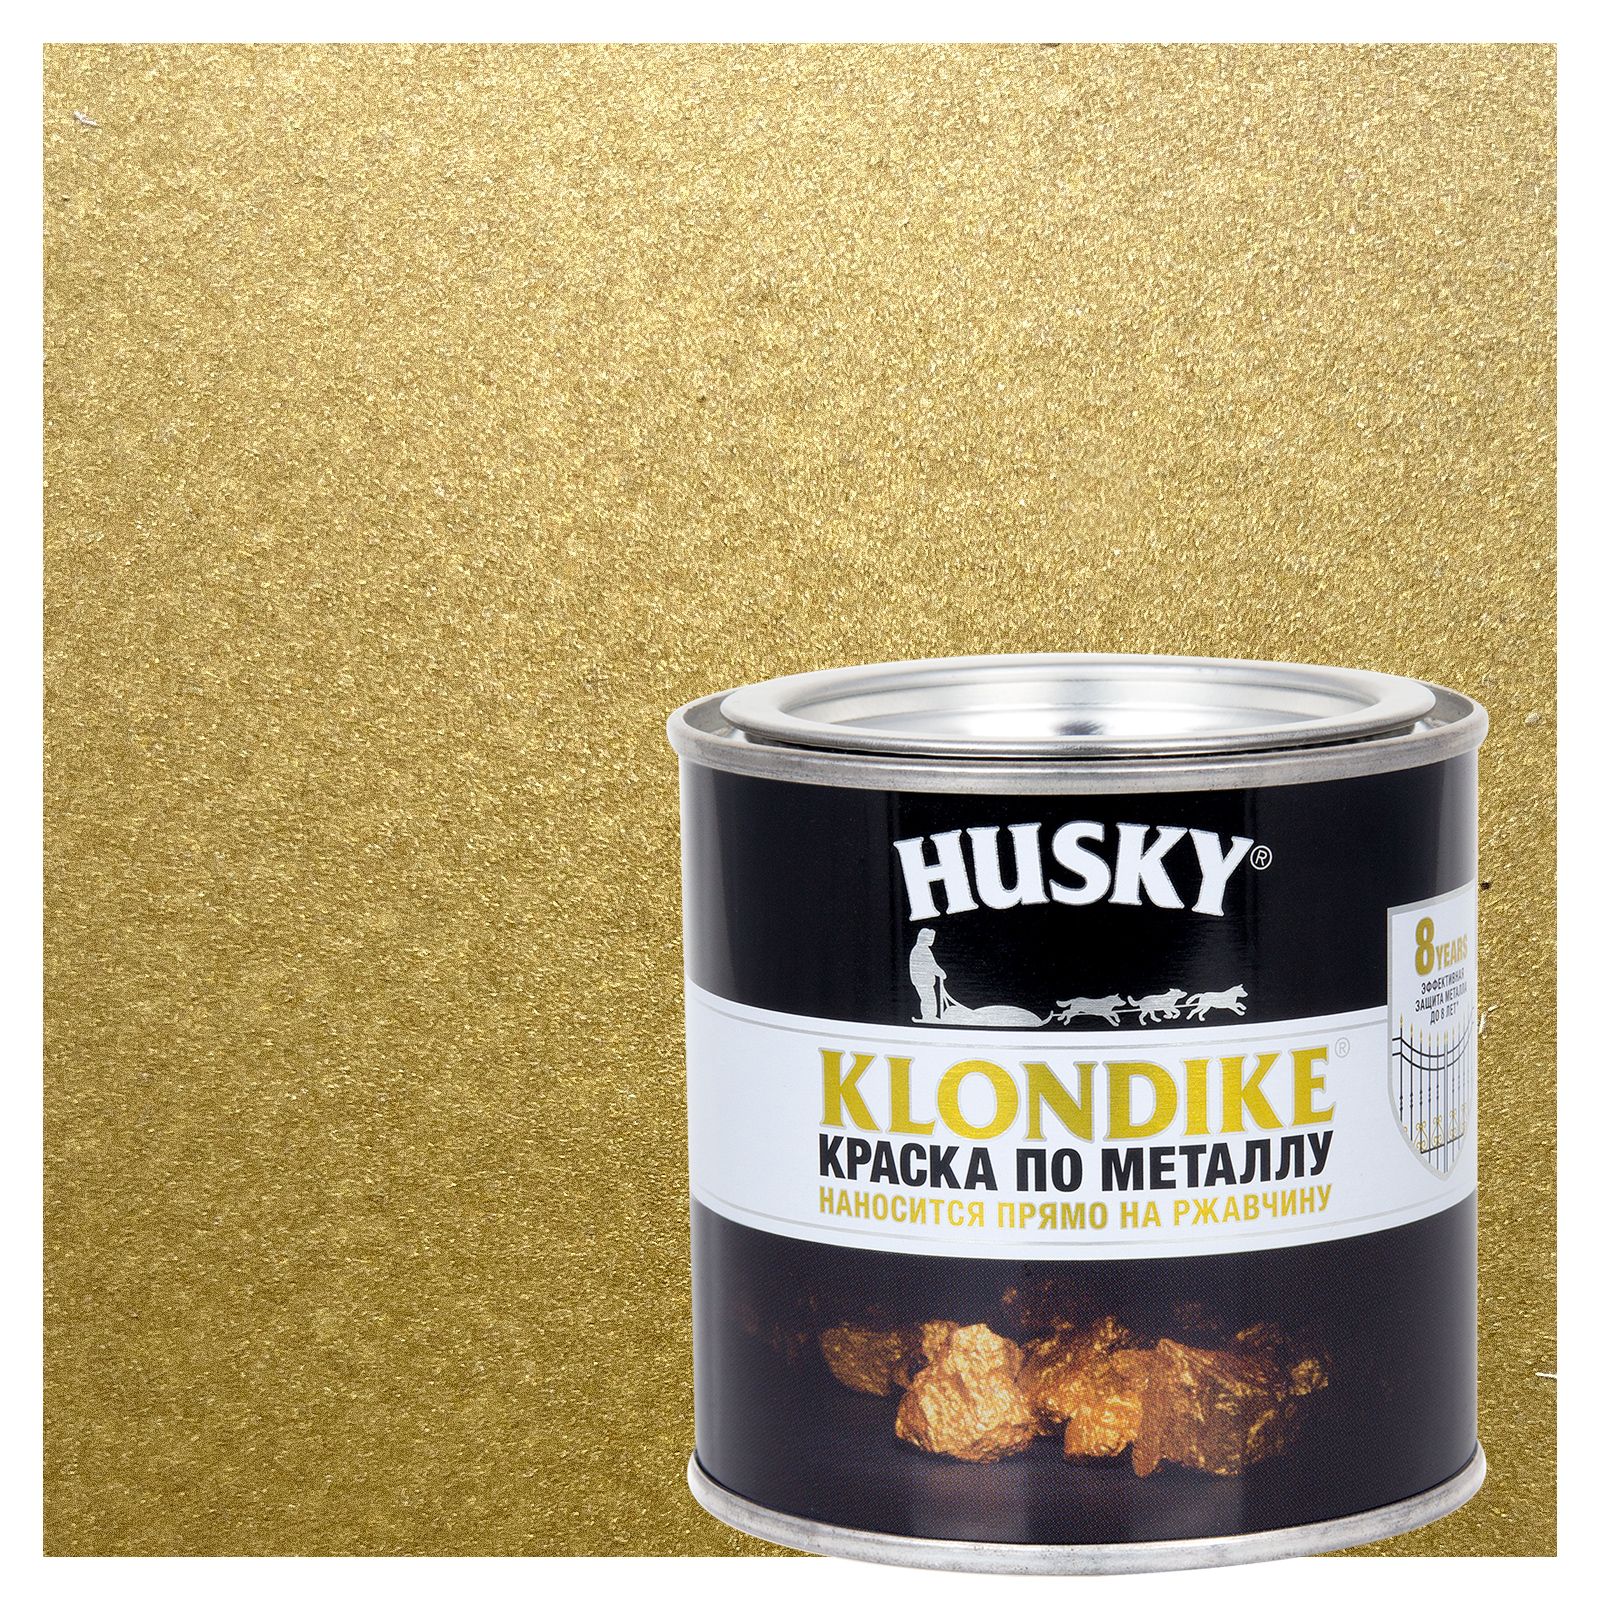 Husky-Klondike краска по металлу глянцевая